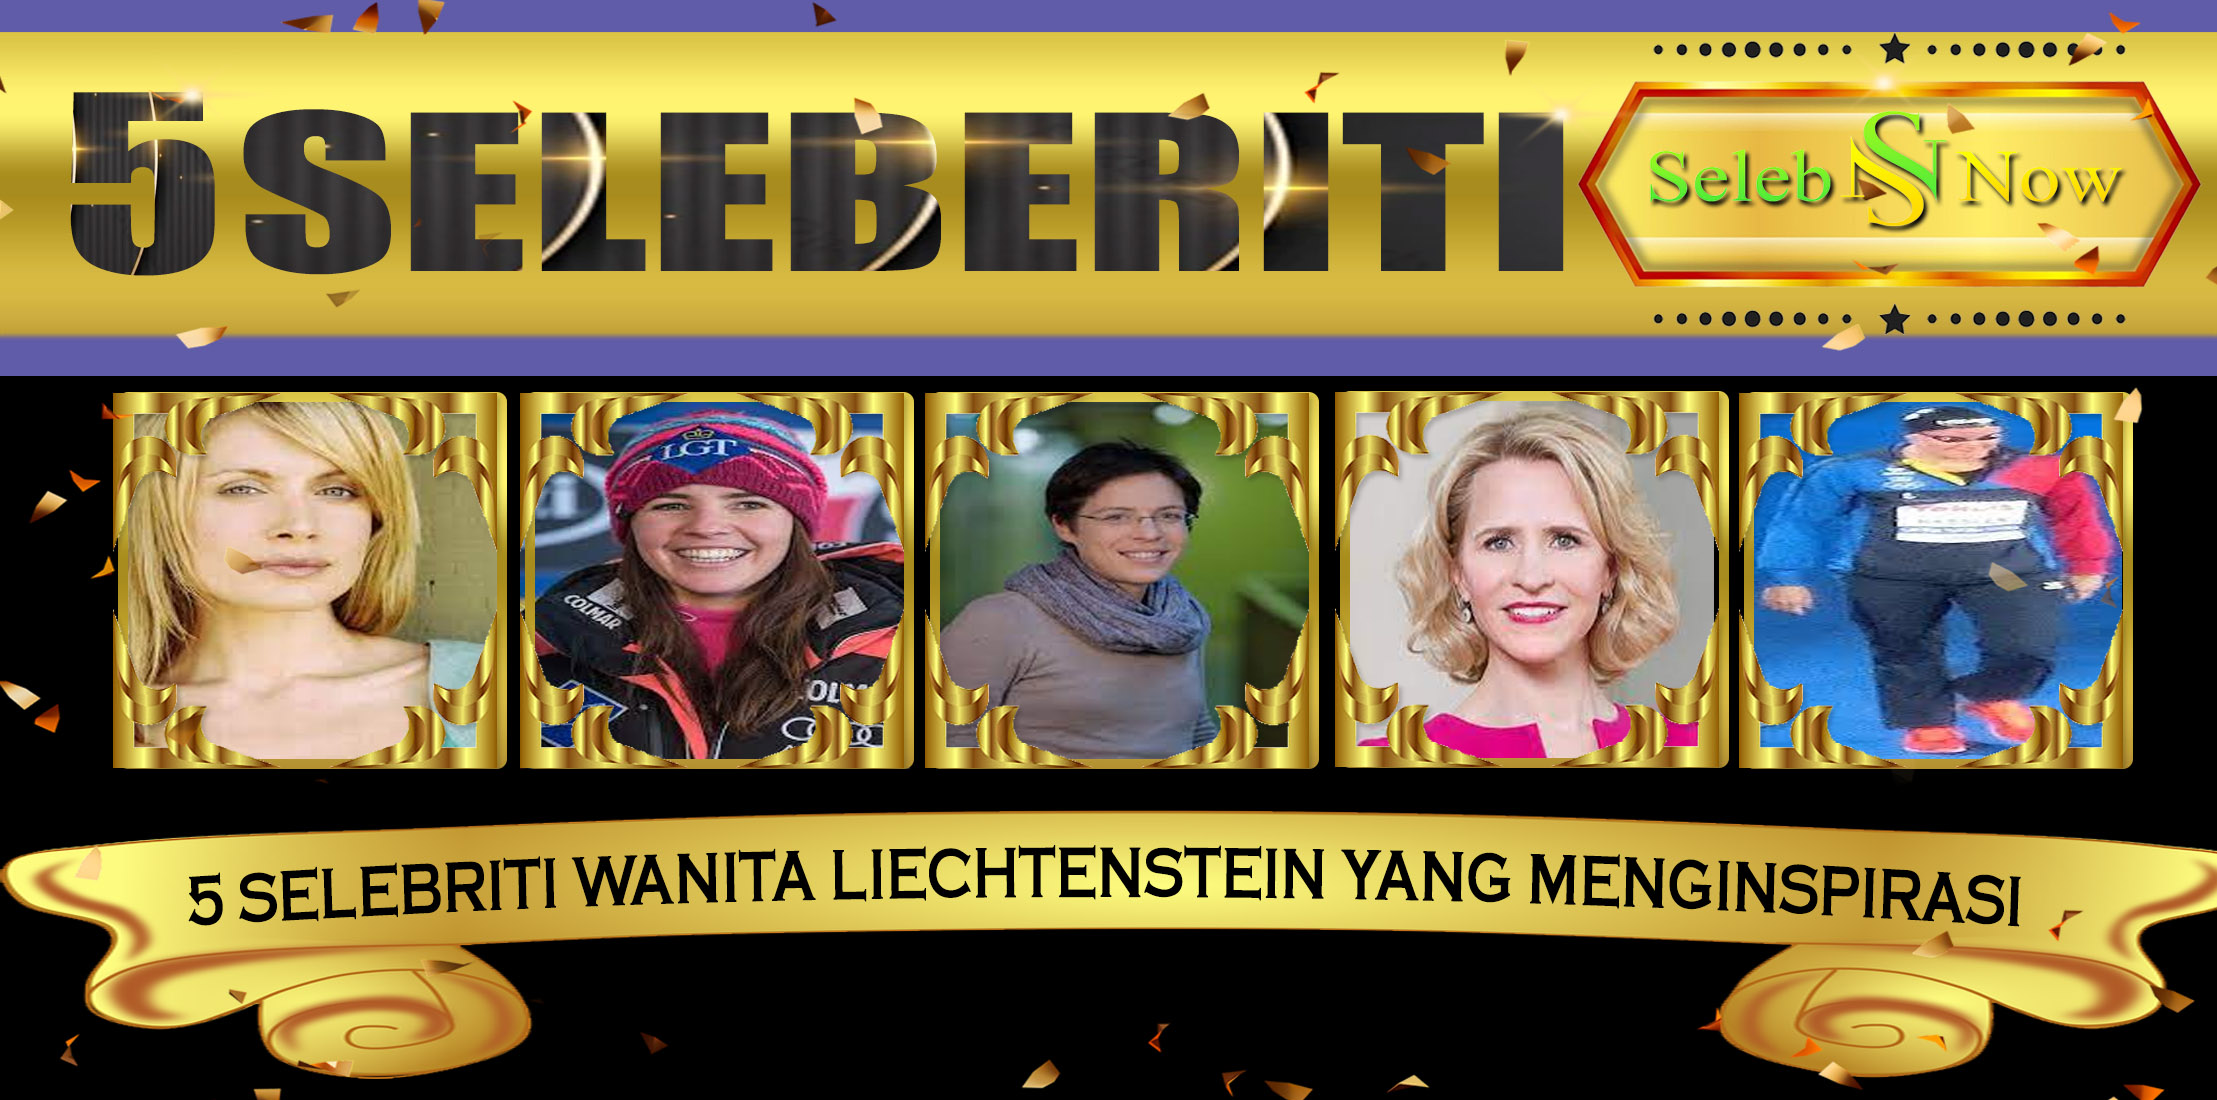 5 Selebriti Wanita Liechtenstein